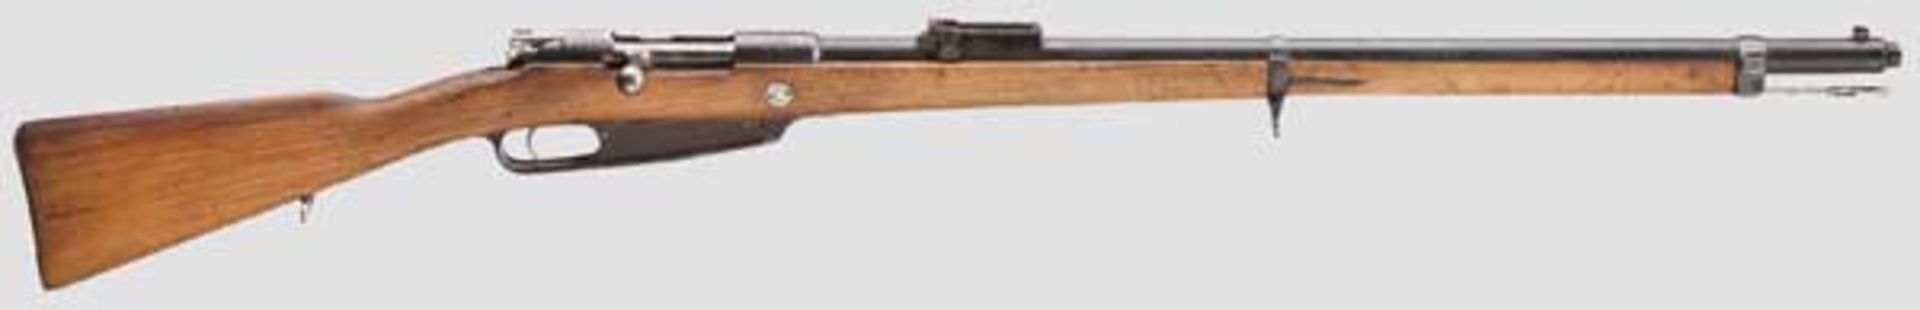 Gewehr 88/05, Danzig, 1890 Kal. 8 x 57, Nr. 4083v. Nicht nummerngleich, Türkenschloss. Lauf